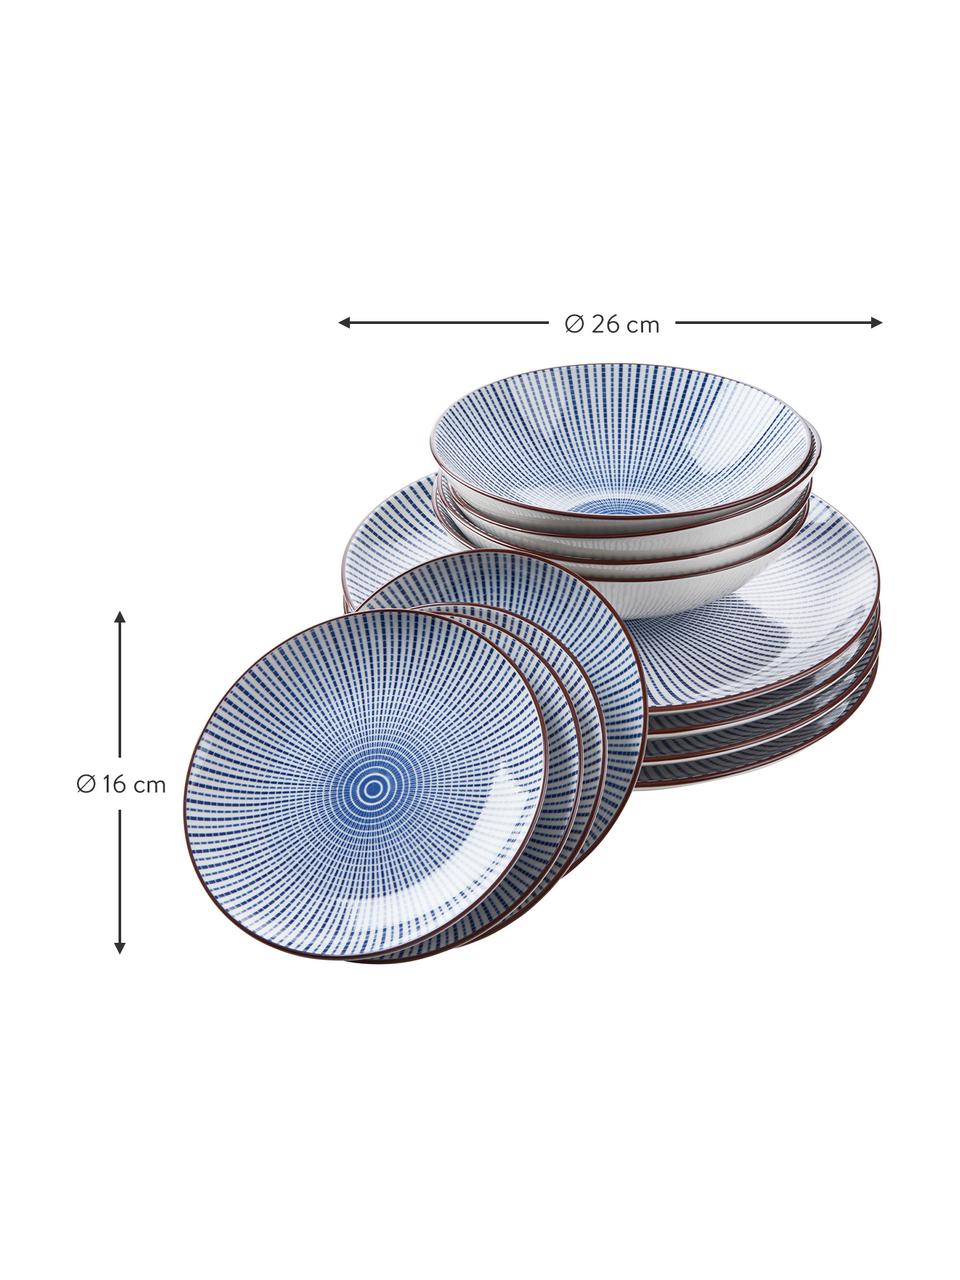 Geschirr-Set Dim Sum mit feinem Muster in Blau/Weiß, 4 Personen (12-tlg.), Keramik, Blau, Weiß, Braun, Sondergrößen